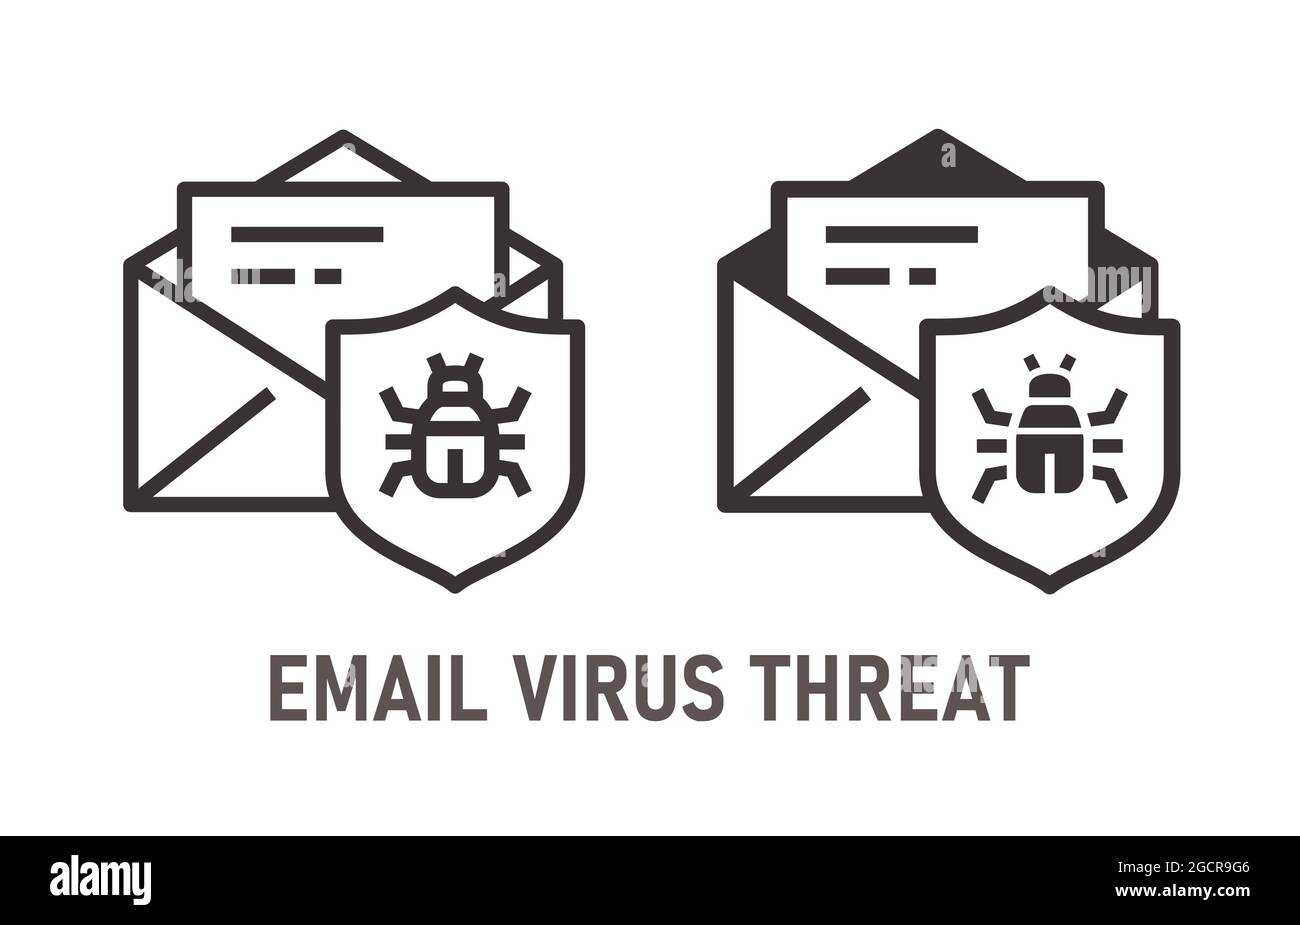 Symbol für Virenbedrohung per E-Mail. Vektorgrafik isoliert auf Weiß. Stock Vektor